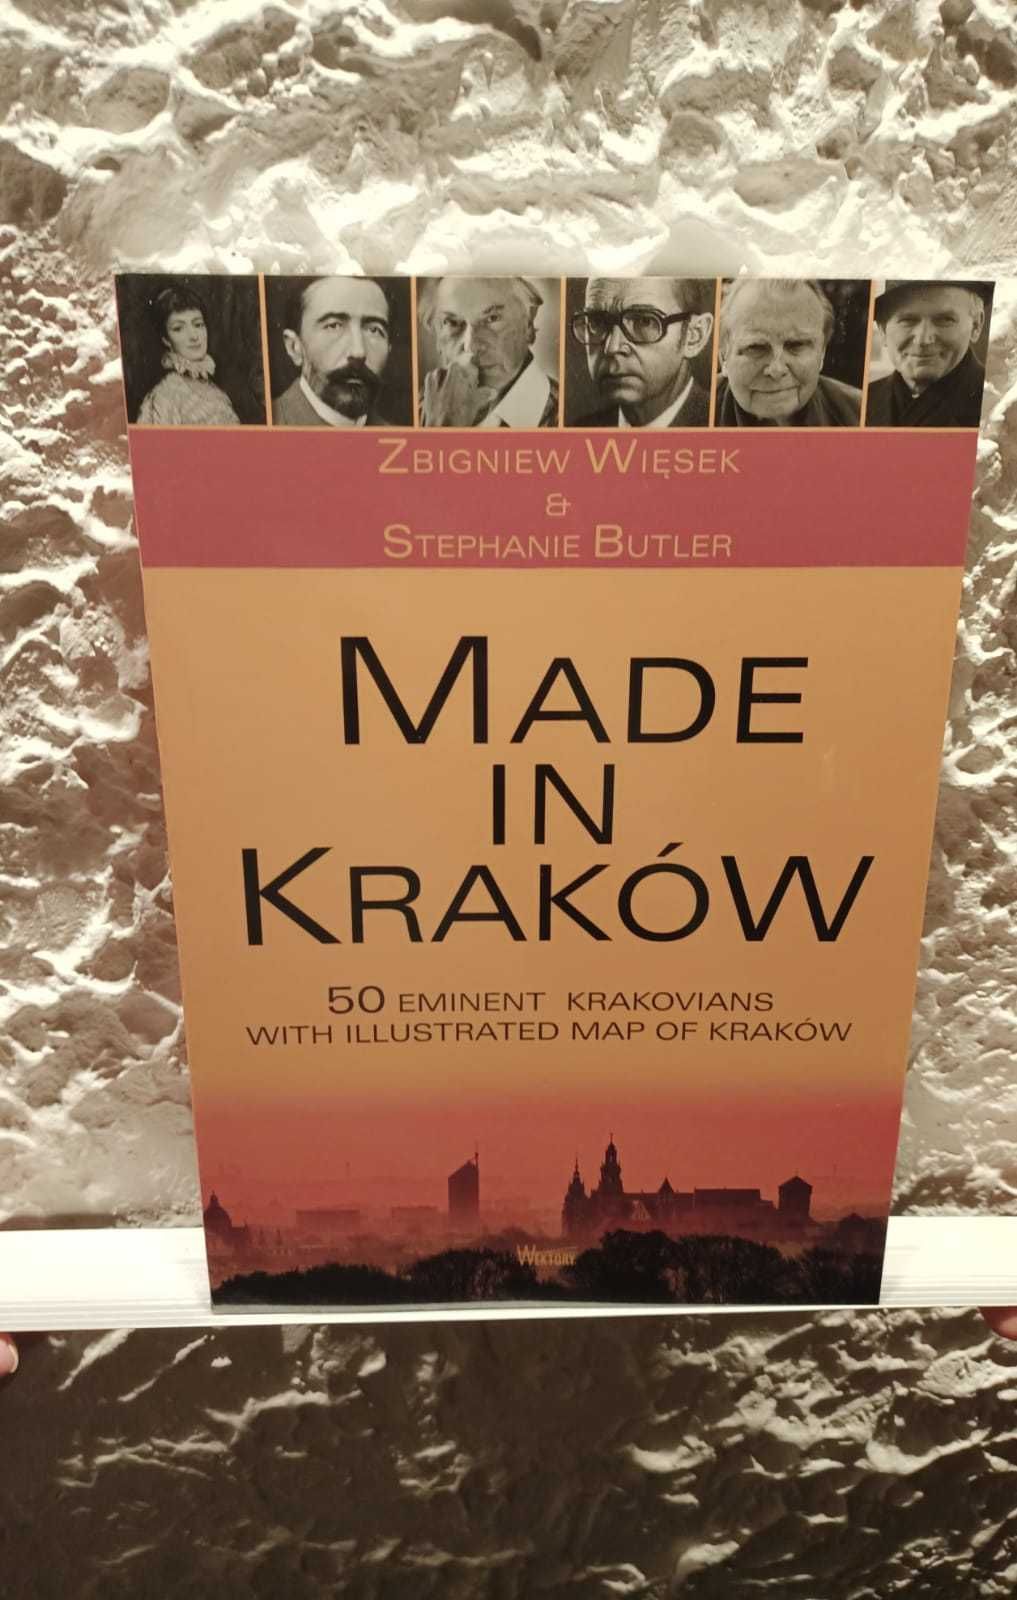 Sprzedam książkę "Made in Krakow 50 EMINENT.